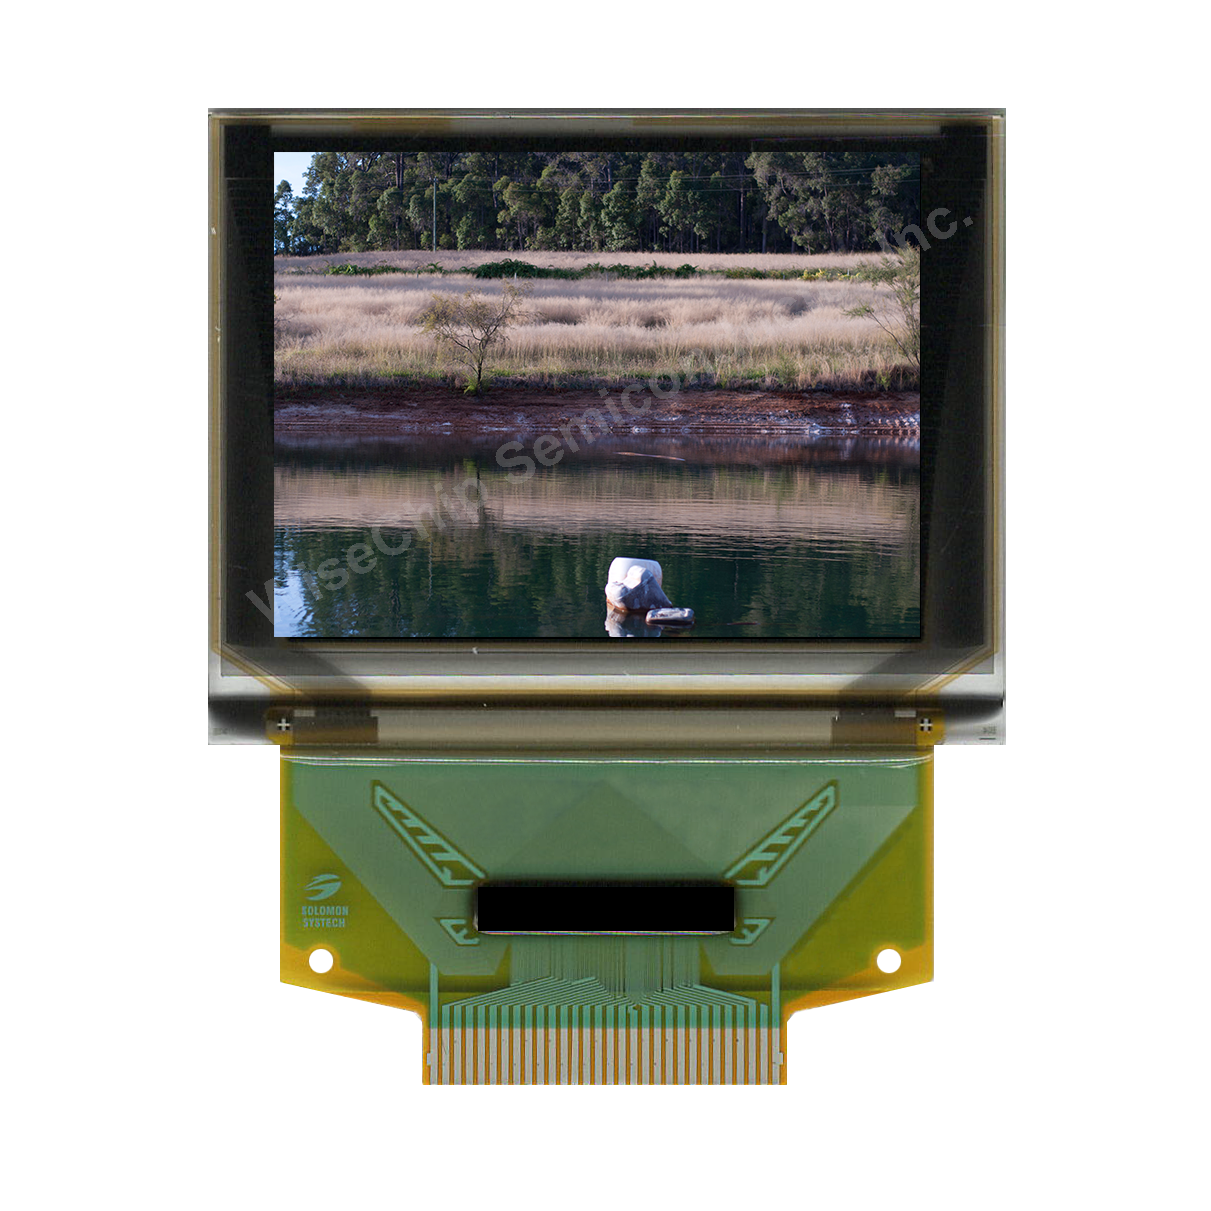 1.27” 128RGBx96